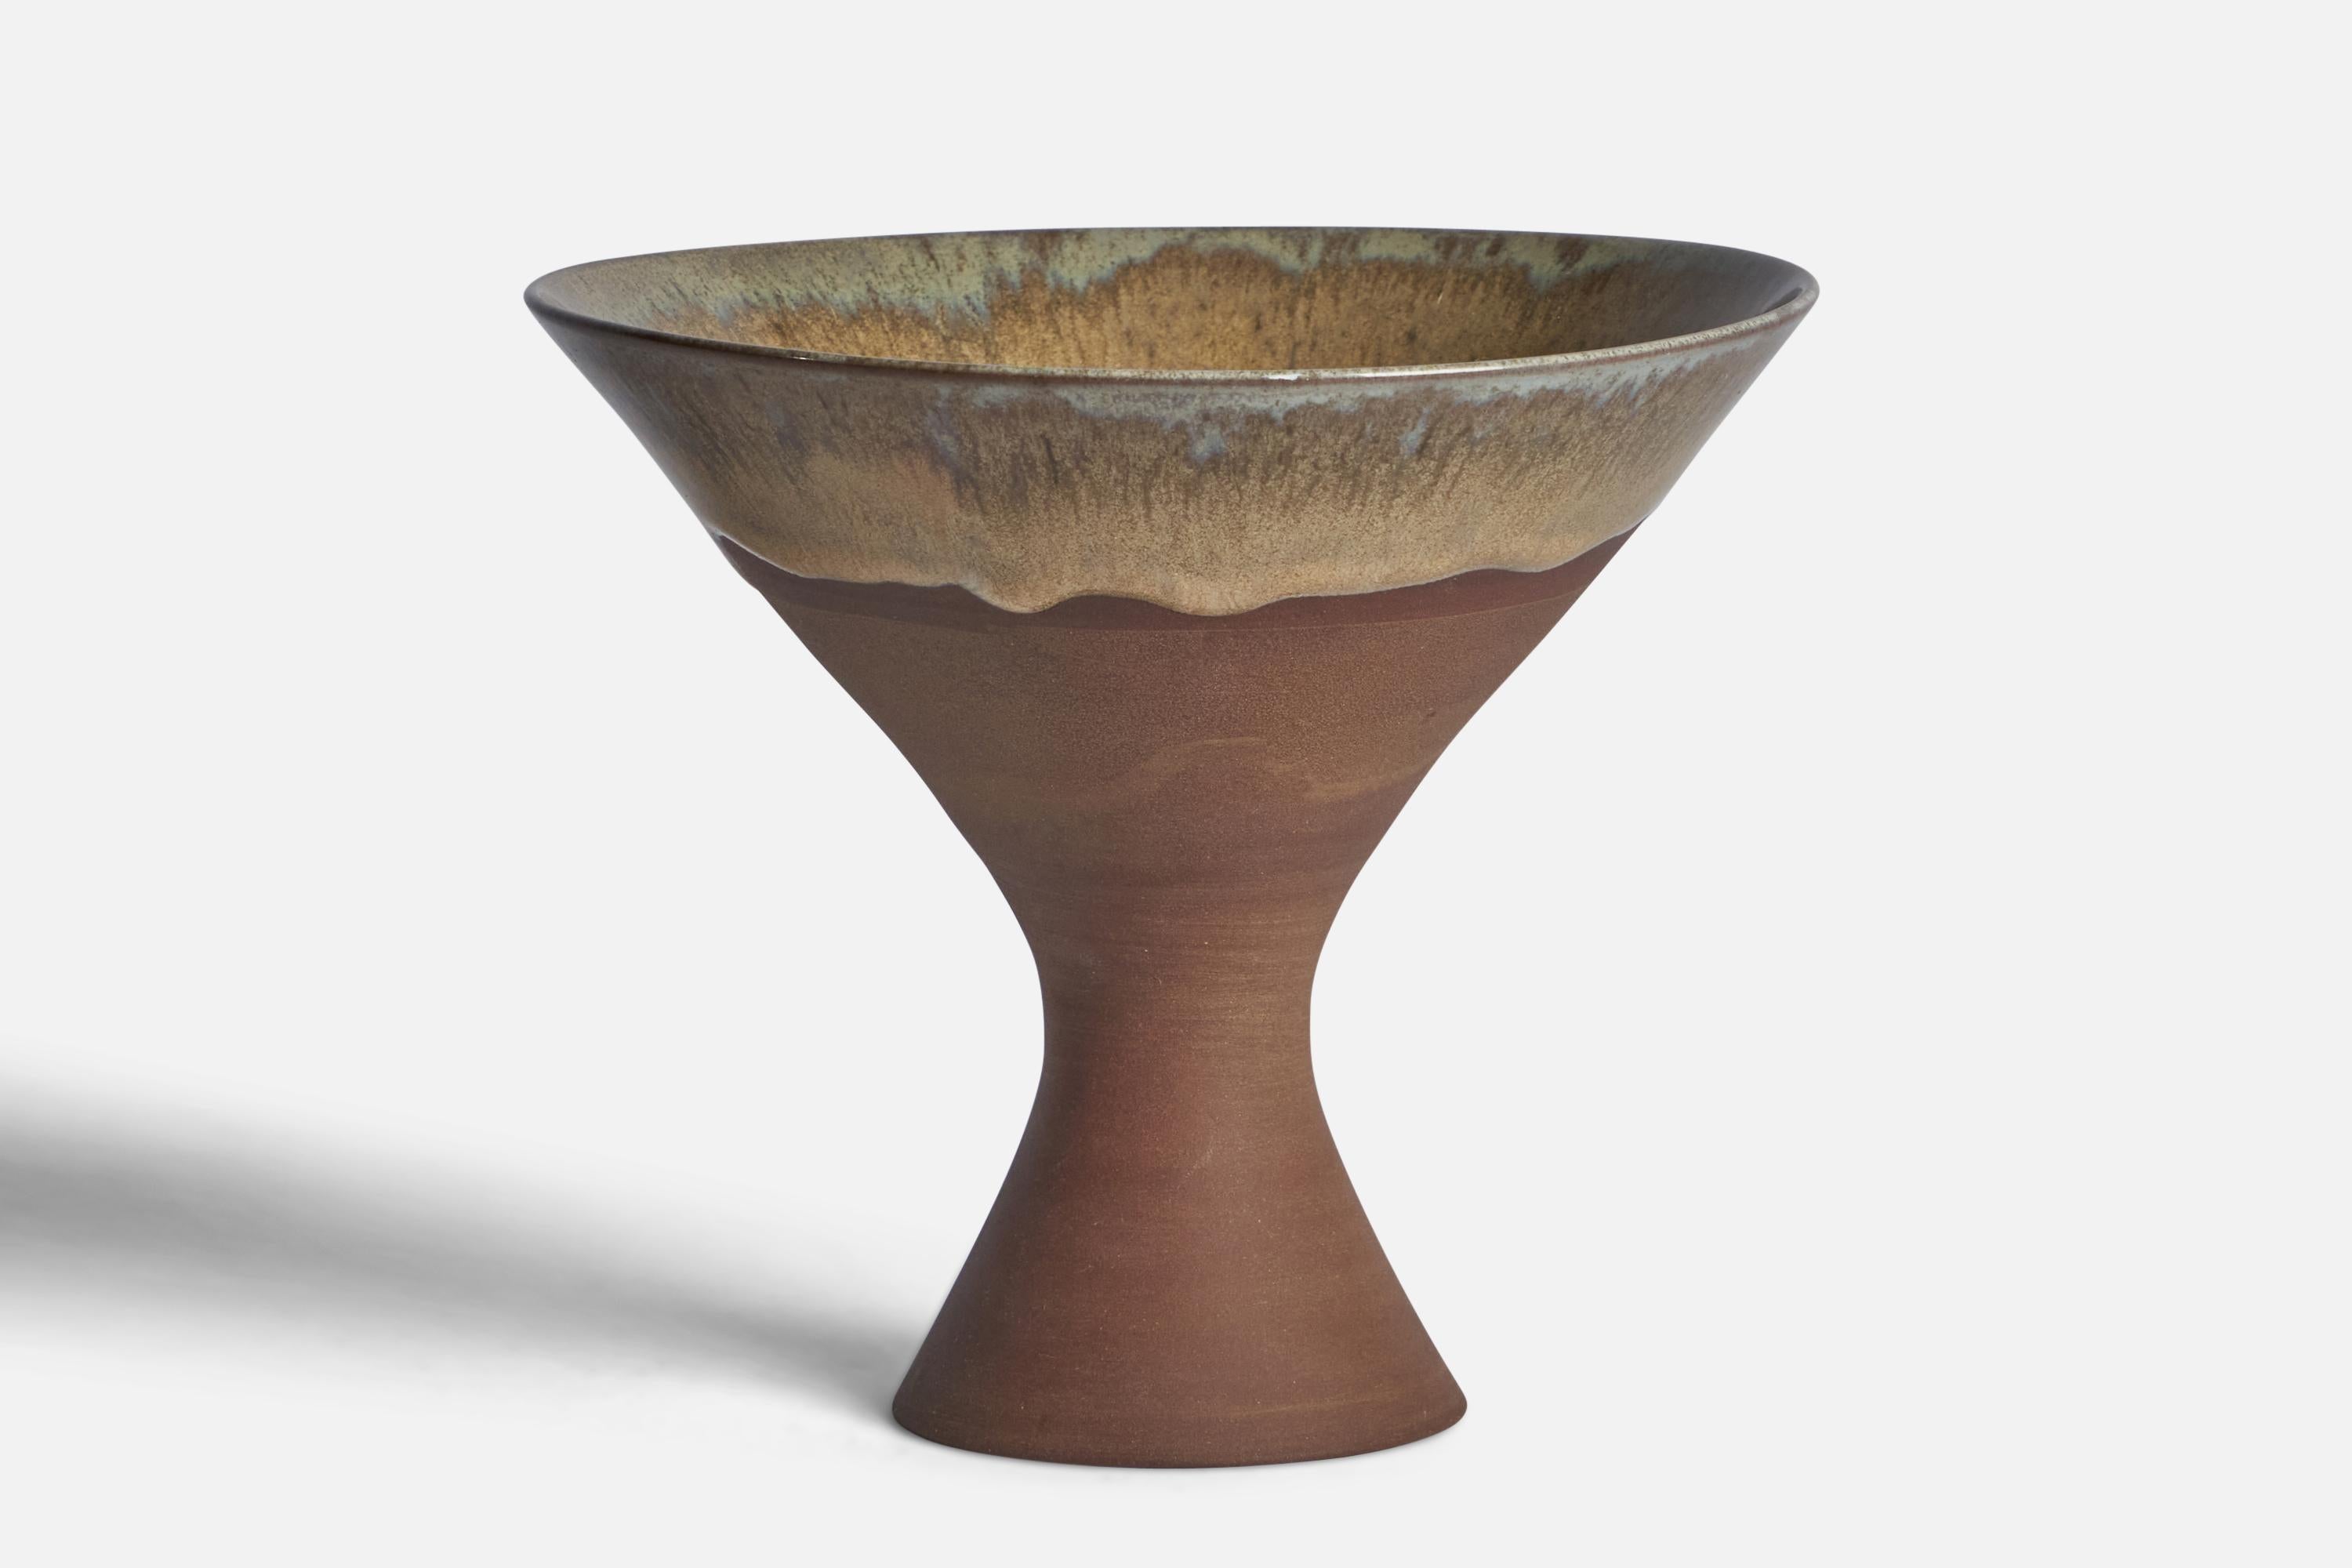 A semi-glazed grey brown beige stoneware vase designed and produced by Sven Hofverberg, Sweden c. 1970s.